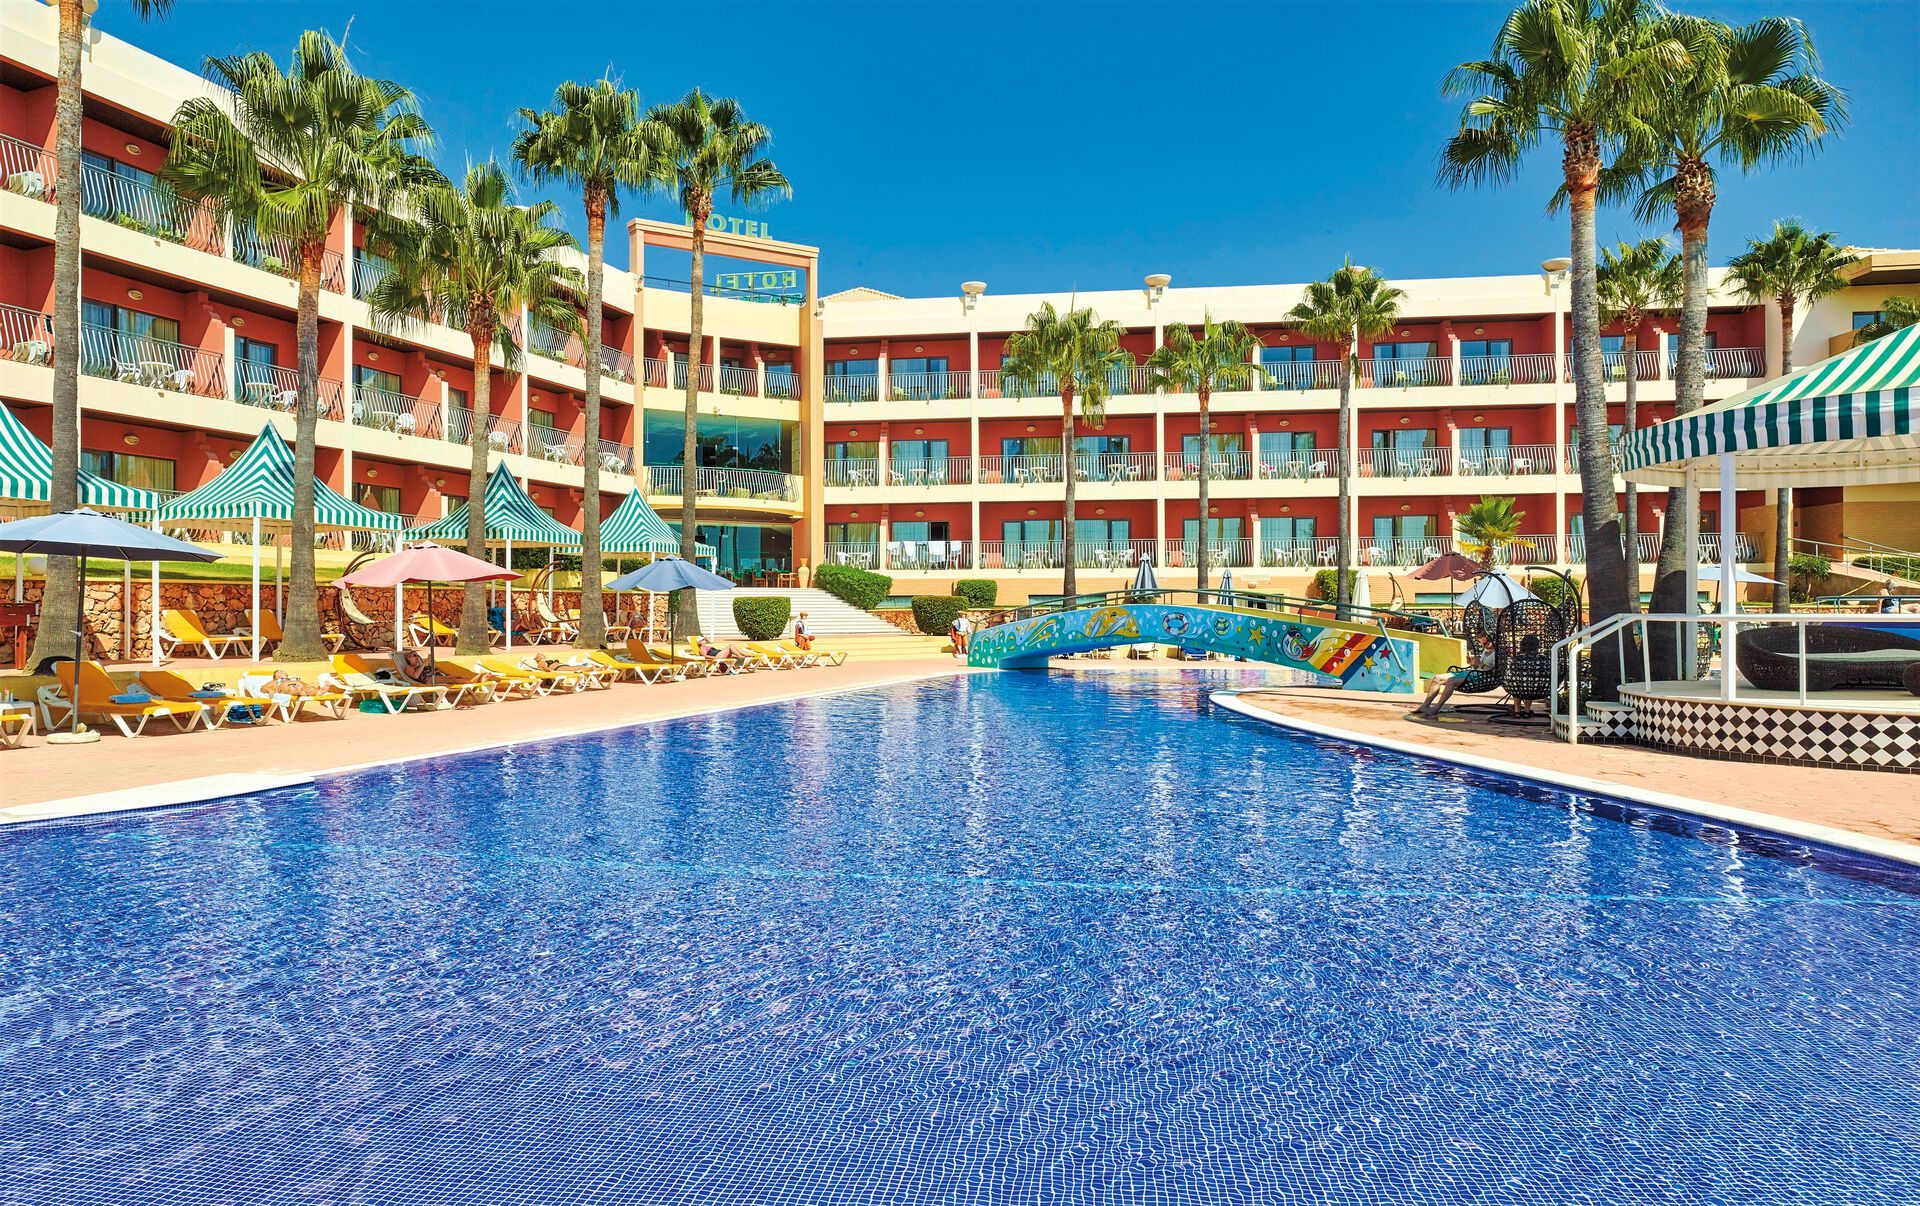 Portugal - Algarve - Albufeira - Hotel Baía Grande 4*